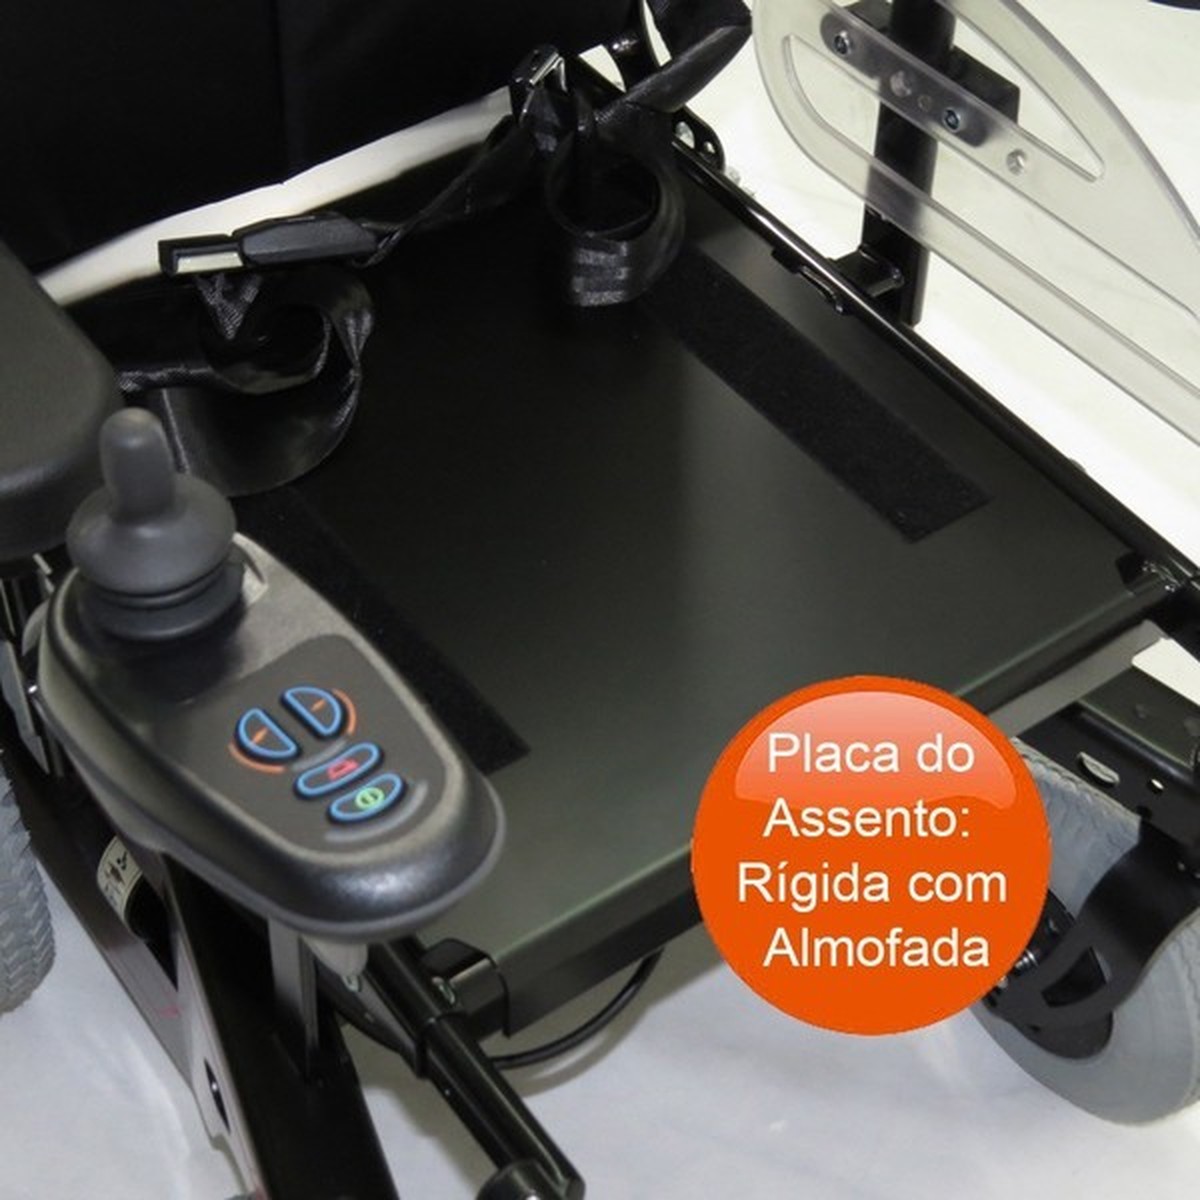 Foto do produto Cadeira de Rodas motorizada Reclinável B400 Ottobock